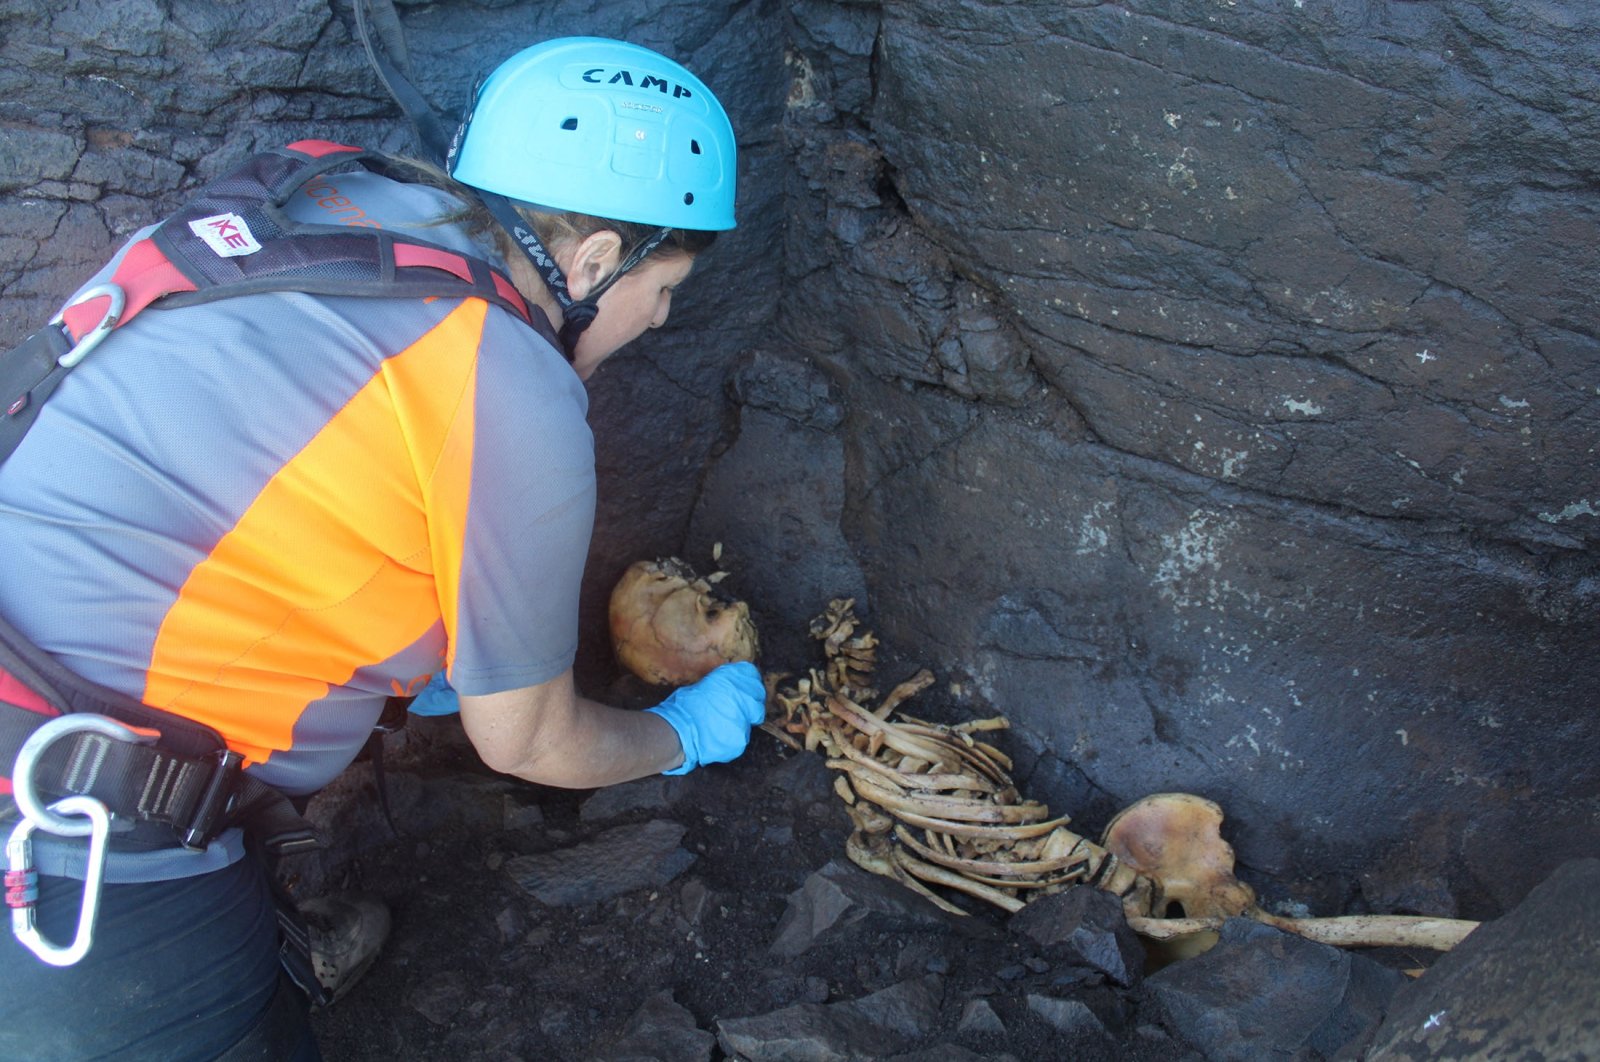 Kerangka misterius dengan tangan terikat membingungkan para arkeolog di Spanyol